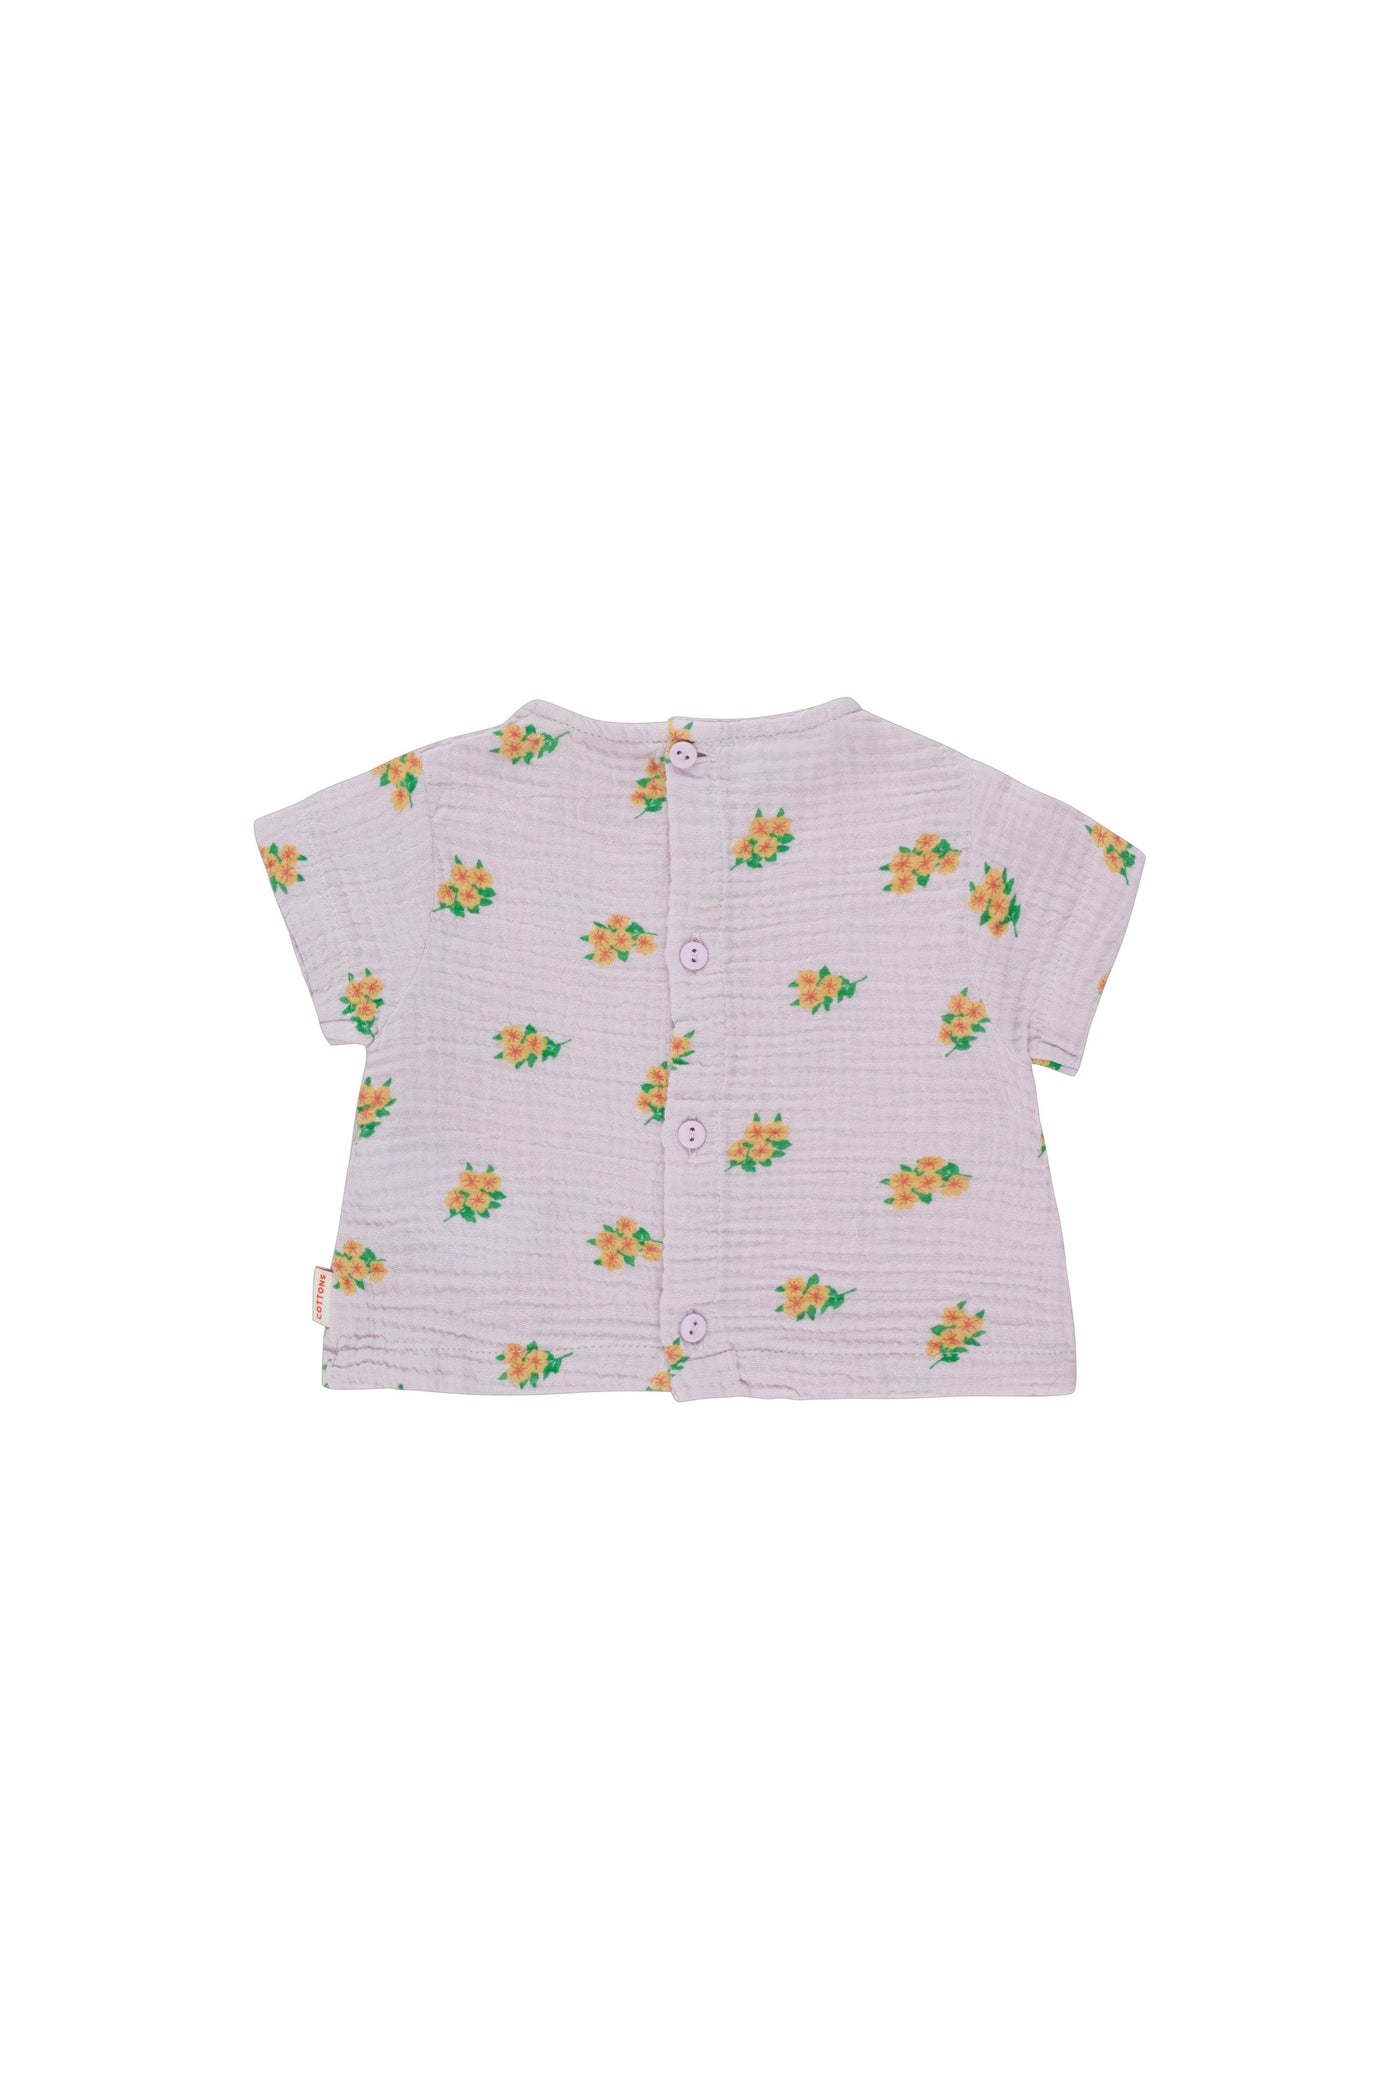 Flowers Baby Shirt